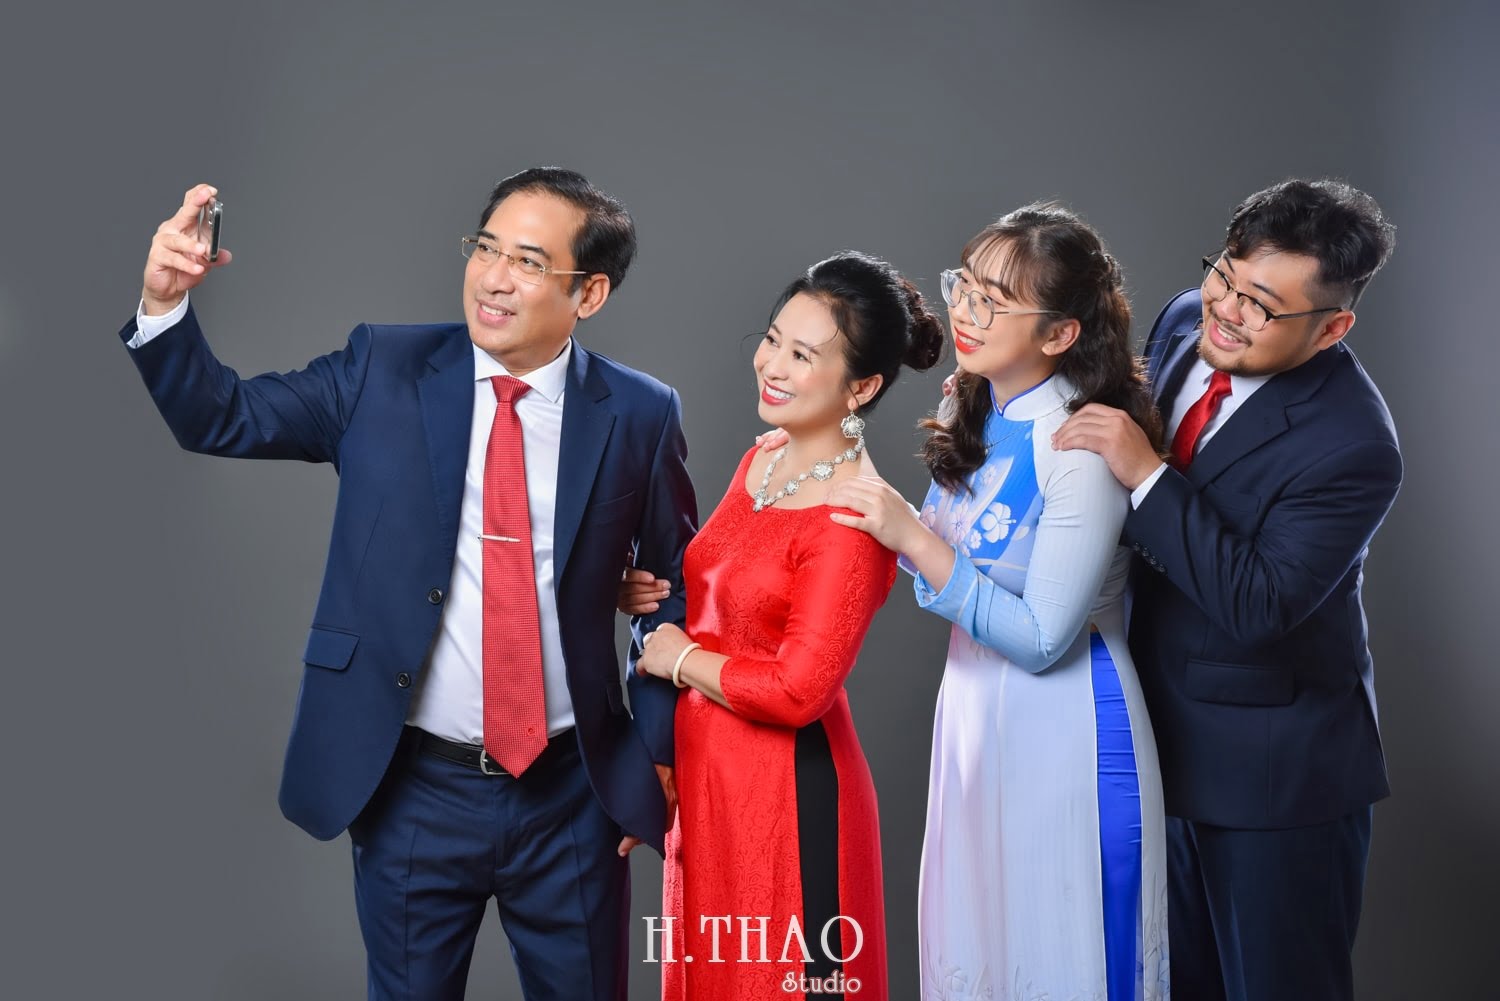 Anh gia dinh 4 nguoi 3 min - Bỏ túi 3 bí quyết chụp ảnh gia đình đẹp - HThao Studio